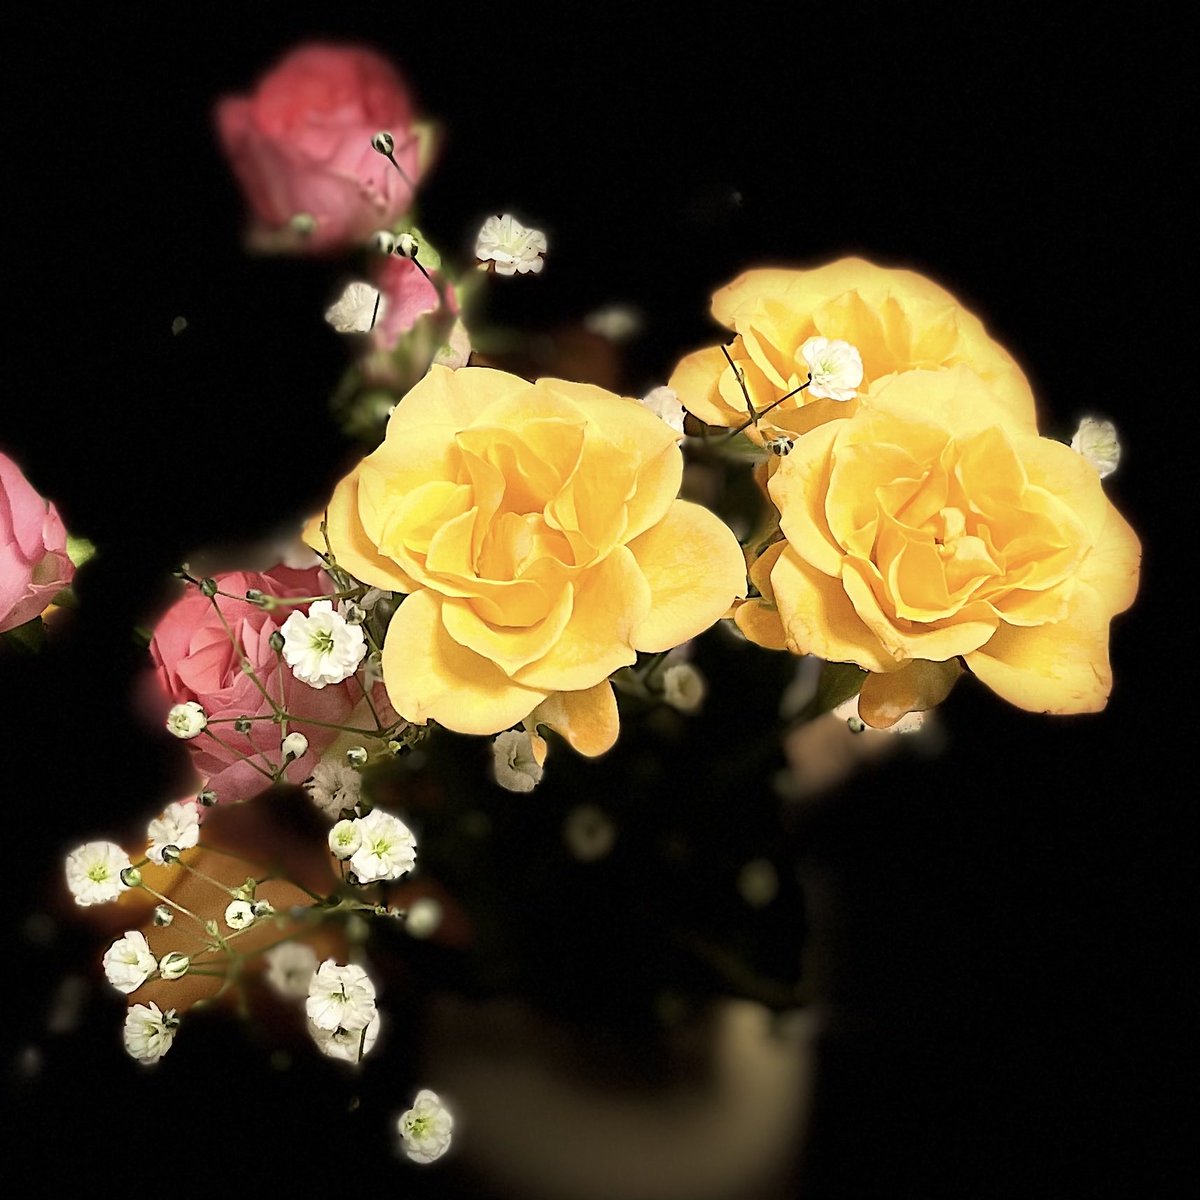 #薔薇 #バラ#冬のバラ #flowers #flowerstagram #flowerphotography #flowerlovers #naturephotography #nature #naturelovers #osaka #japan#道端の花#rose #yellowroses